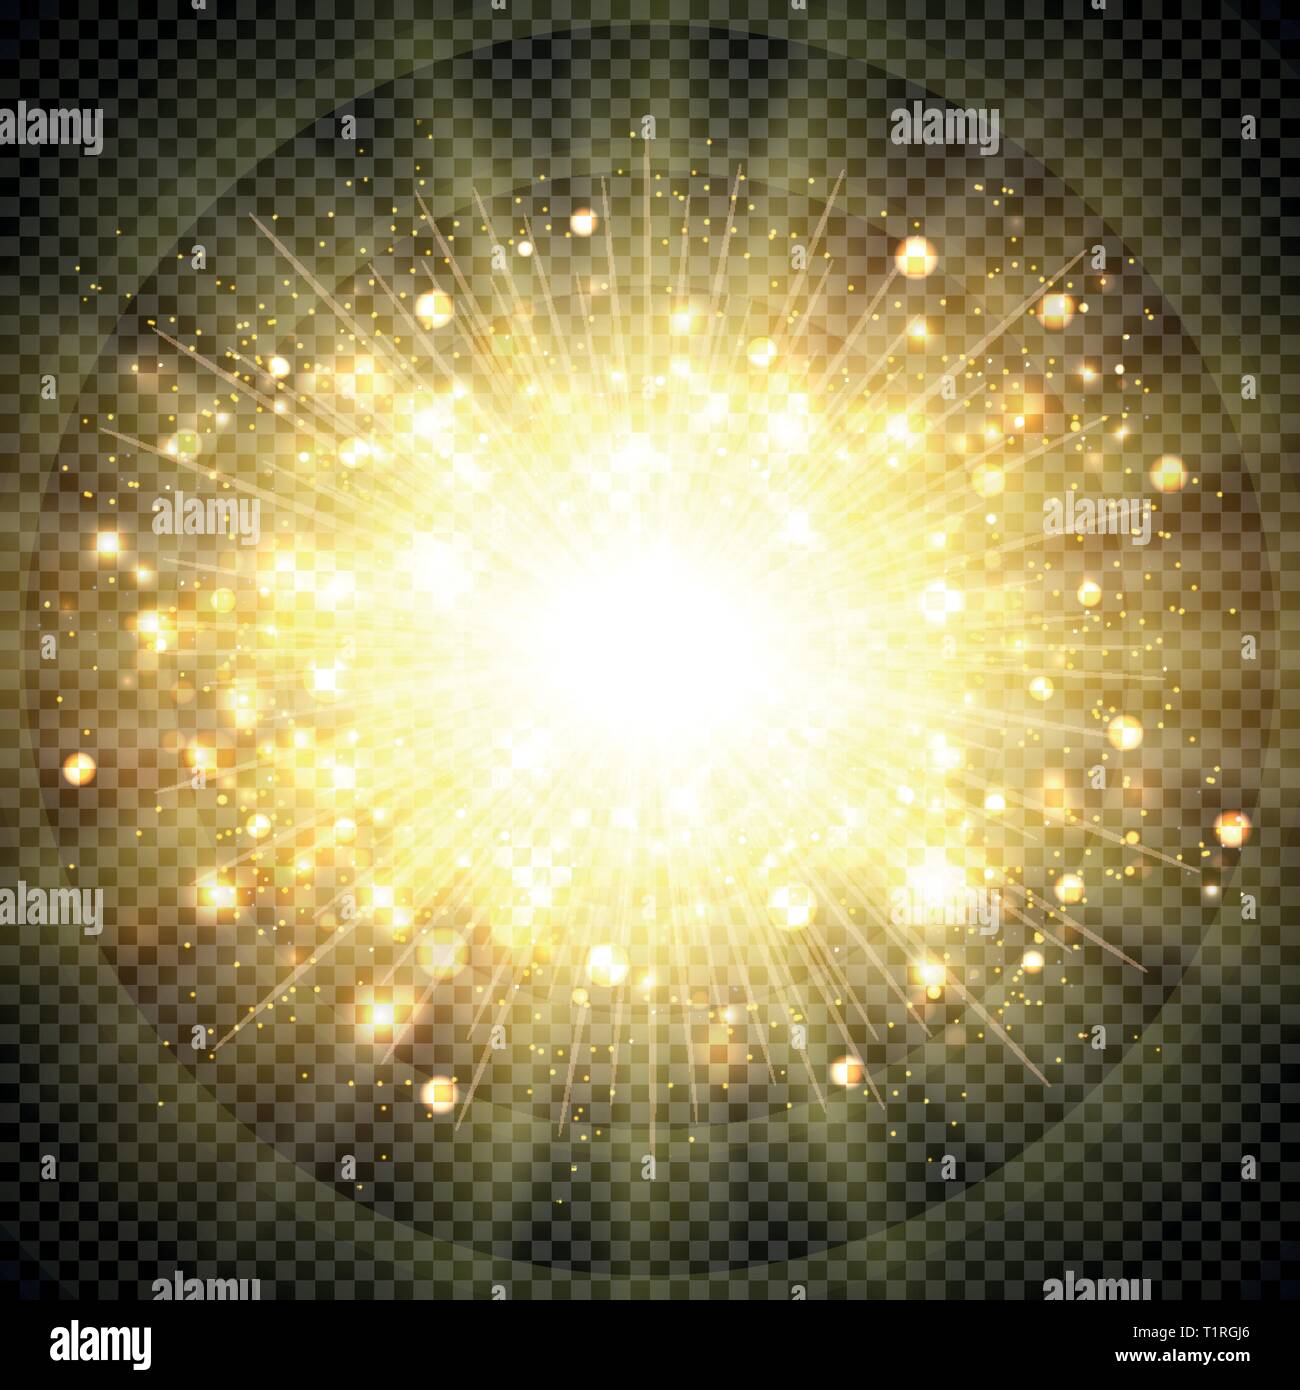 Effetto astratto golden sun luce per sun burst elemento scintillante. È possibile utilizzare per lo scoppio, sunny shine, artwork, decorazione stile. illustrazione vect Illustrazione Vettoriale